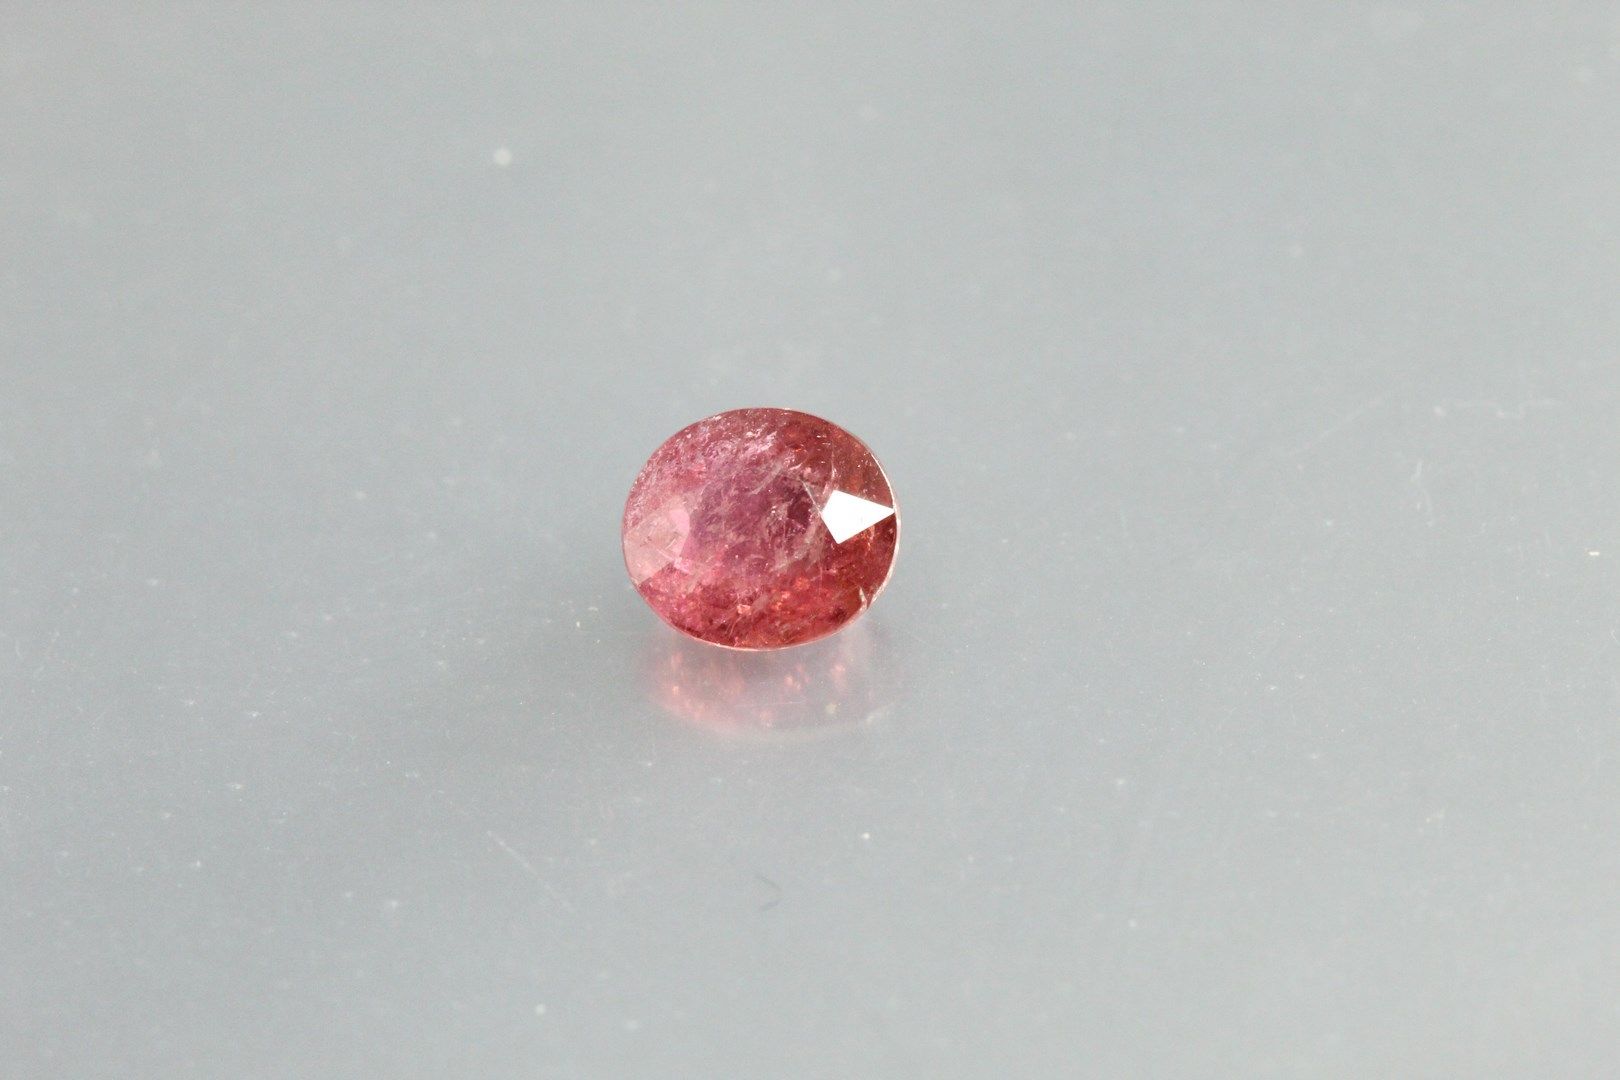 Null Tormalina ovale "rosa-violaceo" su carta.

Mozambico.

Peso: 1,12 carati.